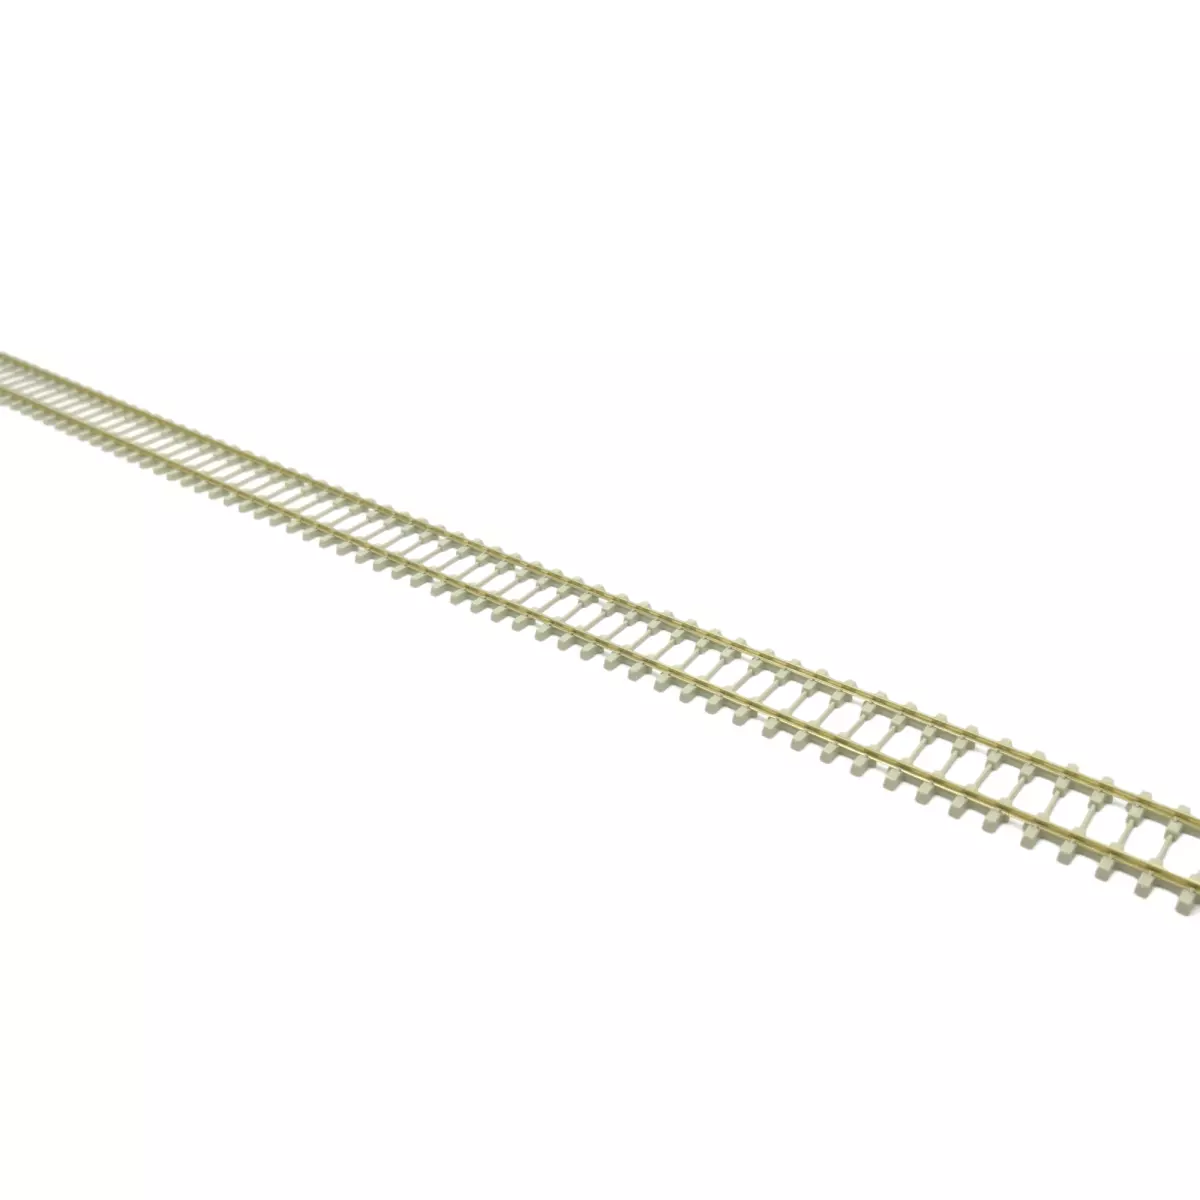 Rail flexible longueur 914mm, HO code75 Bibloc (traverse béton)